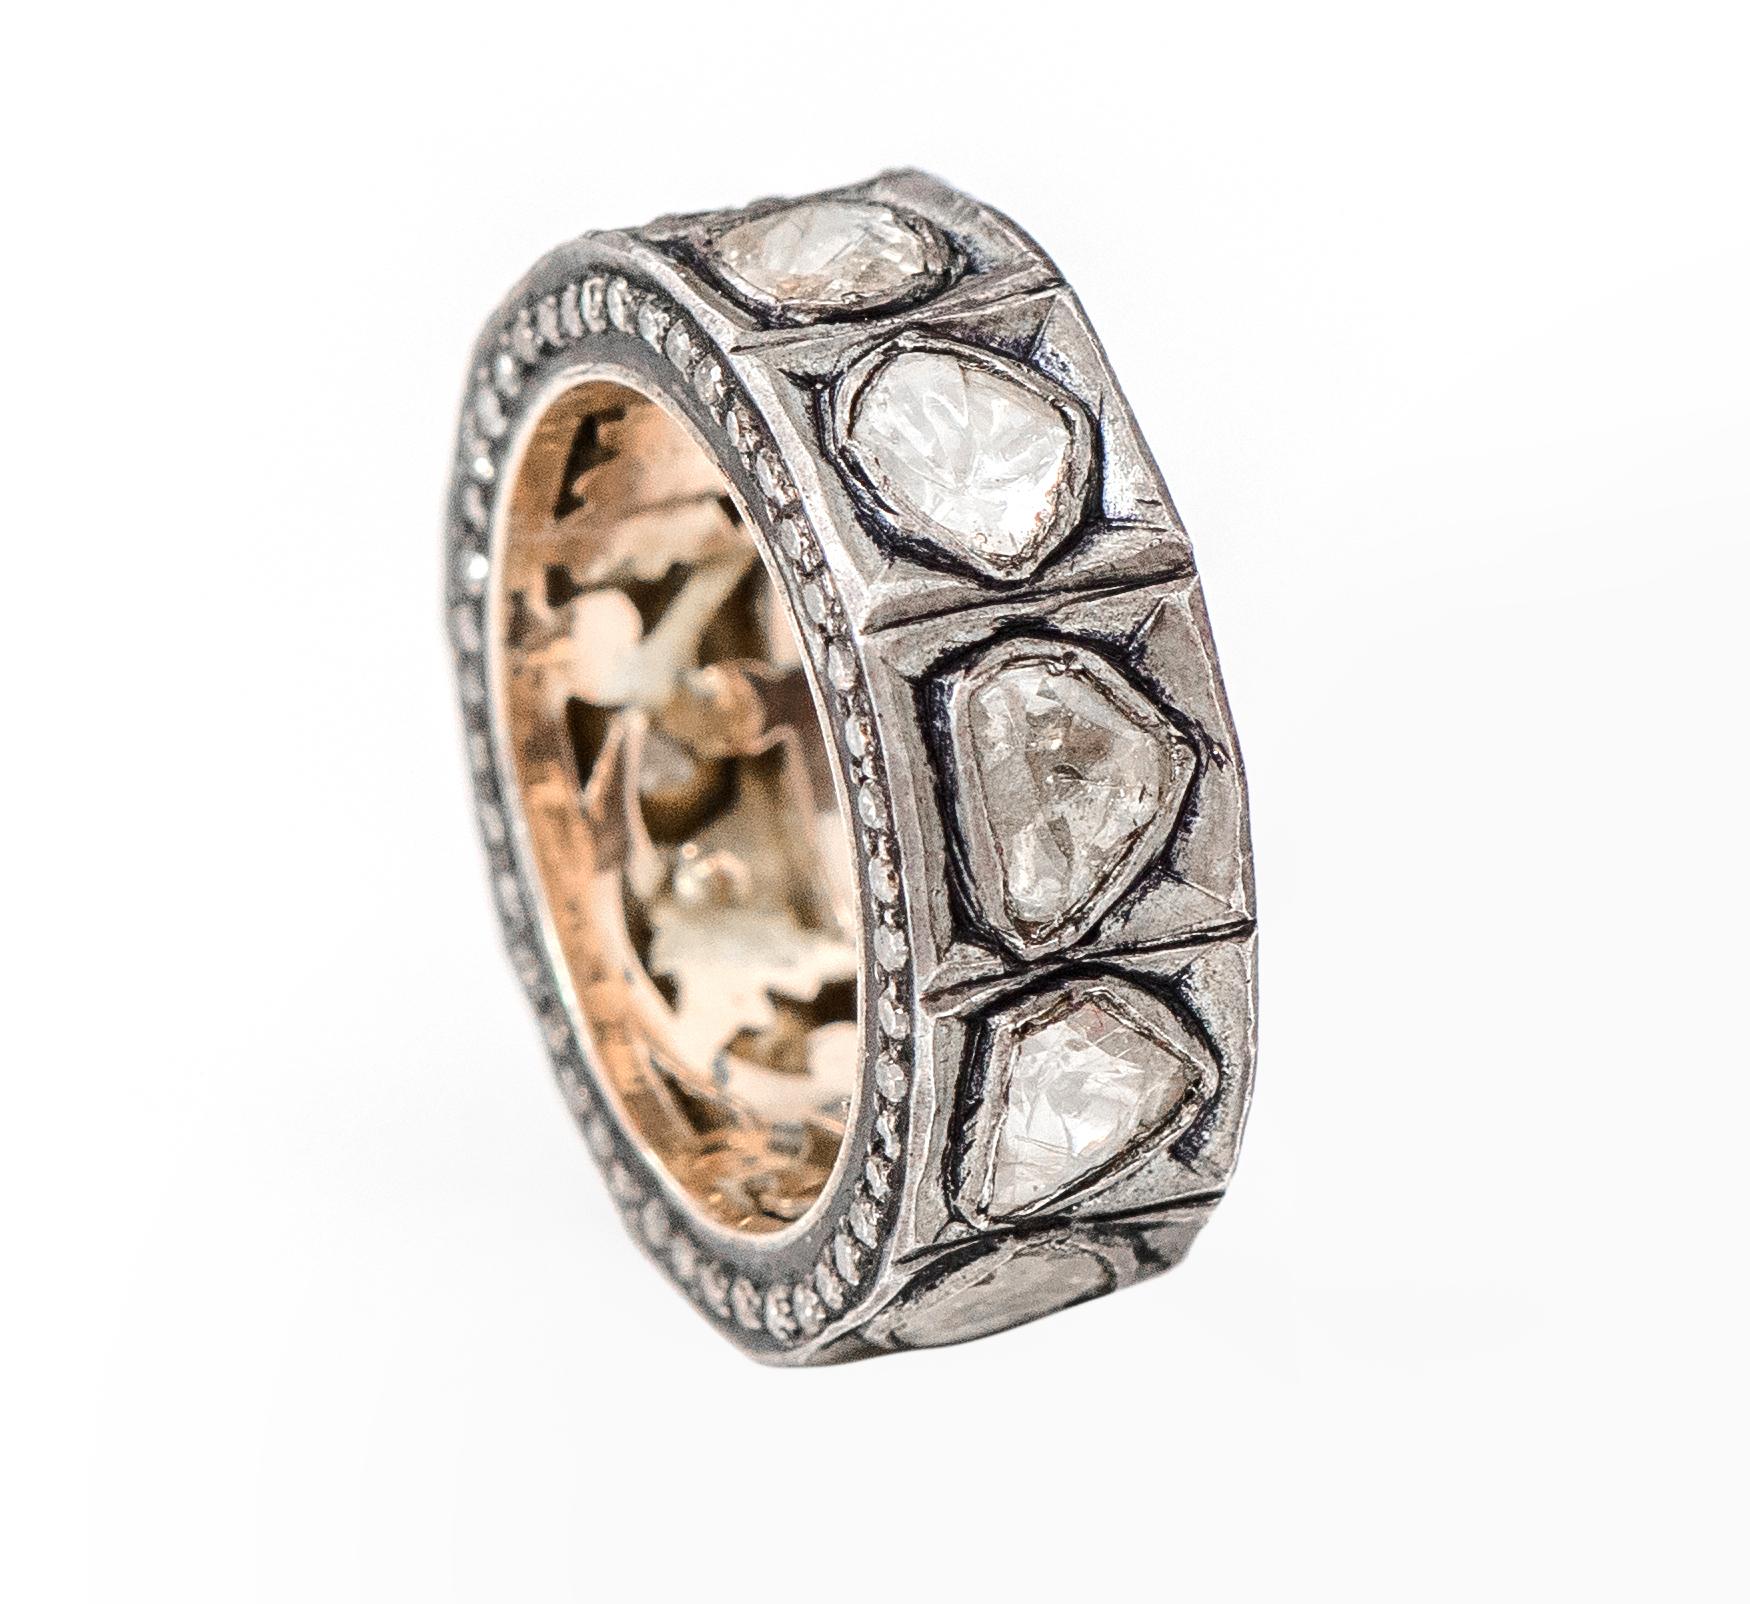 Eternity-Ring im Art-Deco-Stil mit Diamanten

Dieses atypische Polki-Diamantband aus der viktorianischen Zeit im Art-Deco-Stil ist exquisit. Der ungleichmäßige flache Polki-Diamanten-Solitär im Fancy-Schliff in Lünettenfassung mit dem Element des